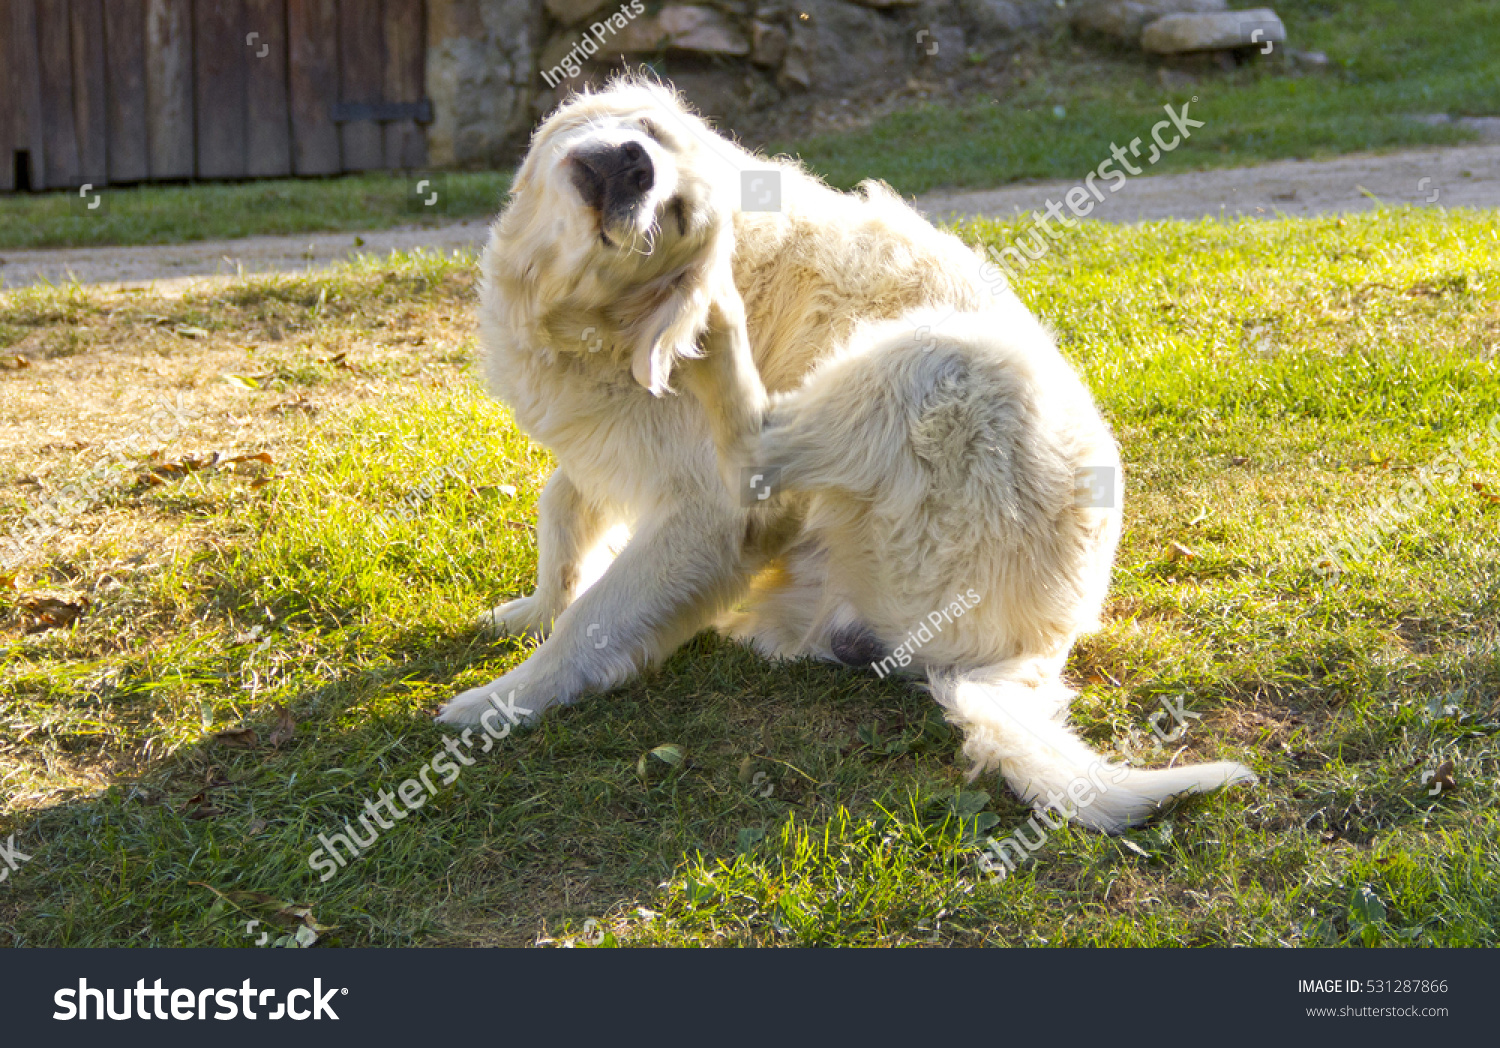 Golden retriever dog scratching #531287866